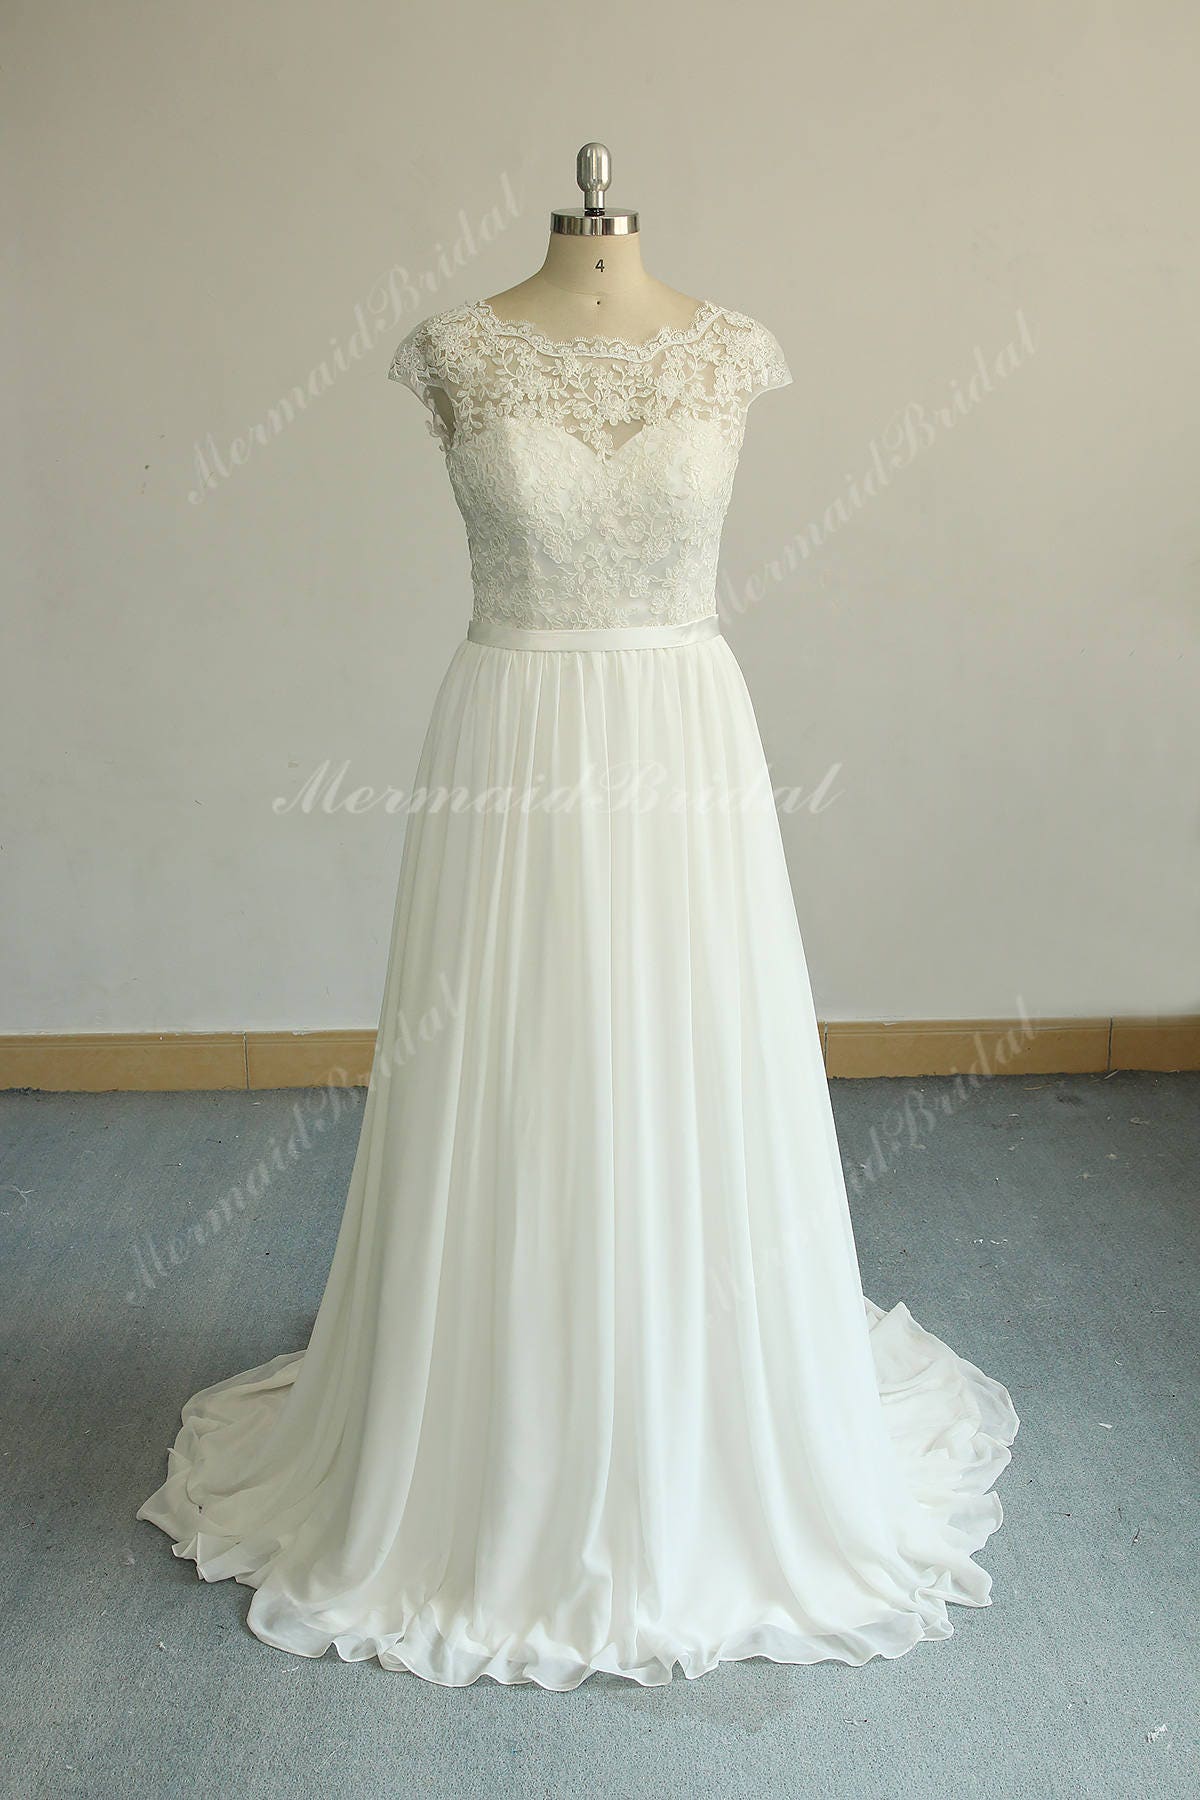 Romantic Ivory Aline Vintage Chiffon Lace Wedding Dress Boho | Etsy